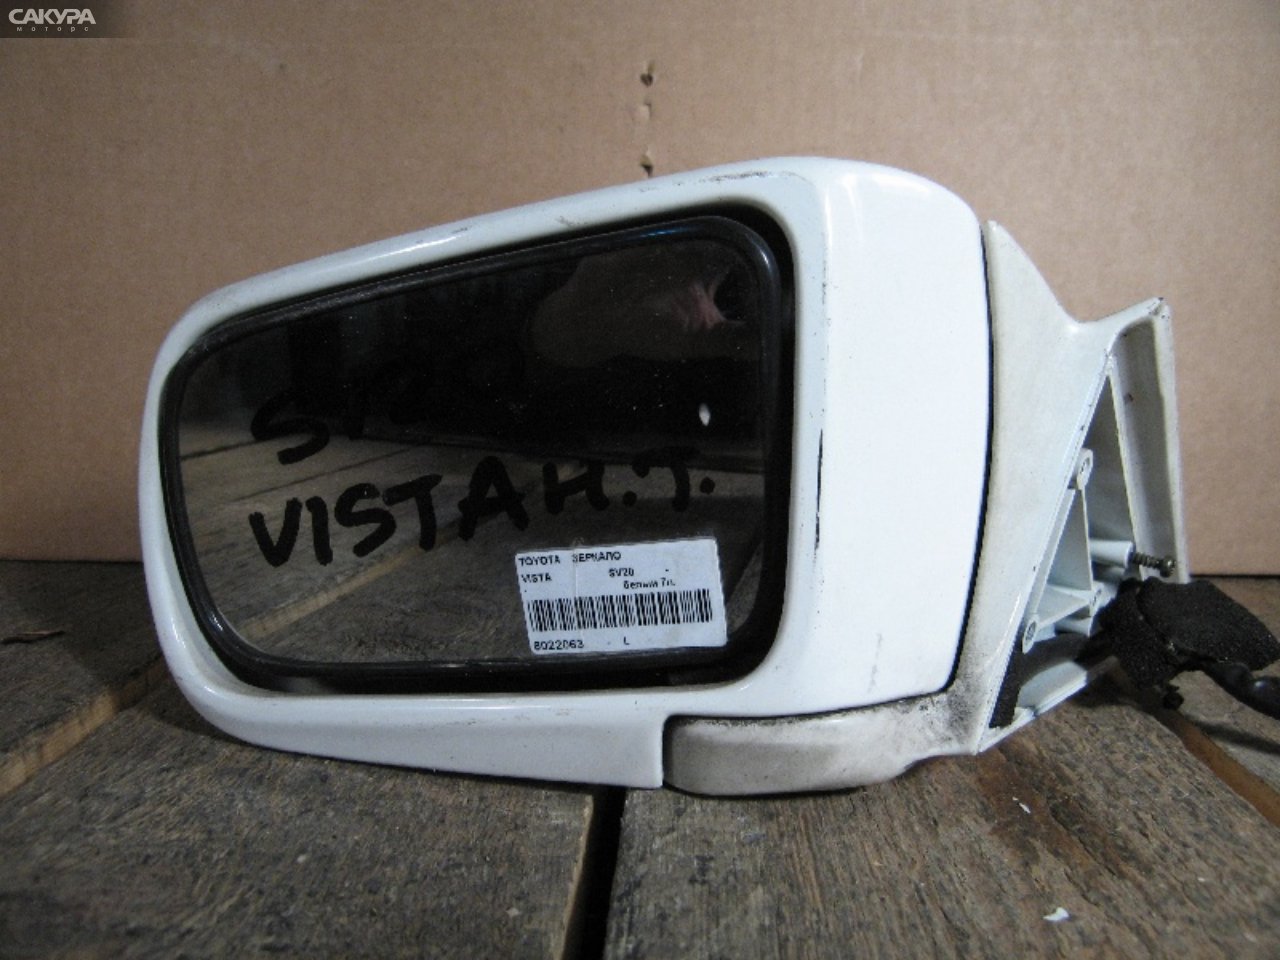 Зеркало боковое левое Toyota Vista SV22: купить в Сакура Абакан.